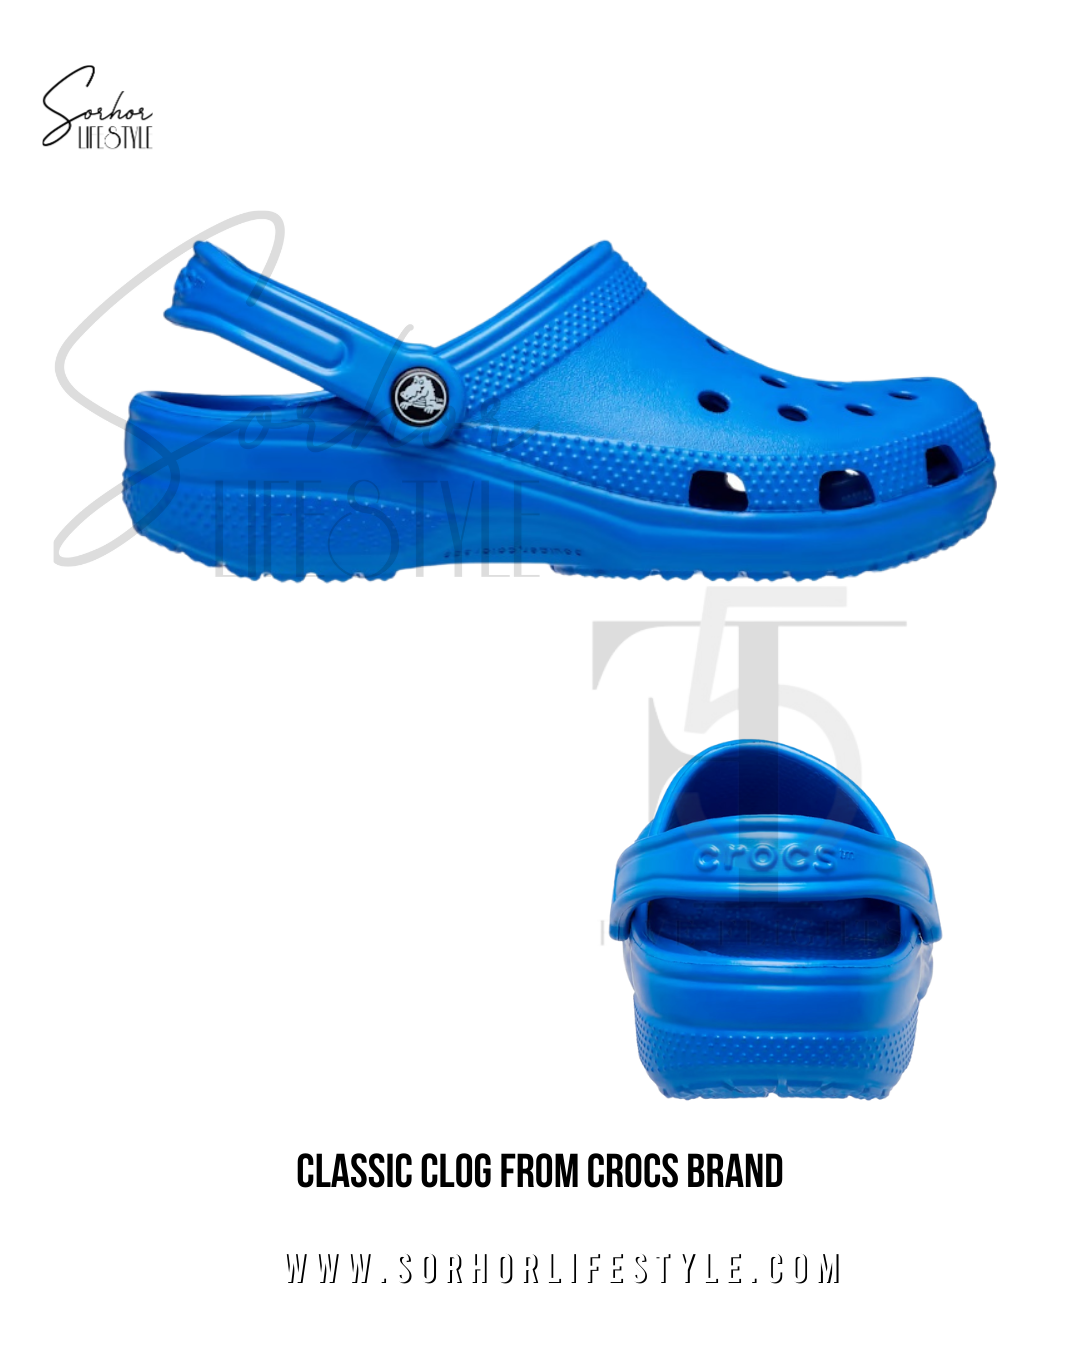 Custom Crocs Base